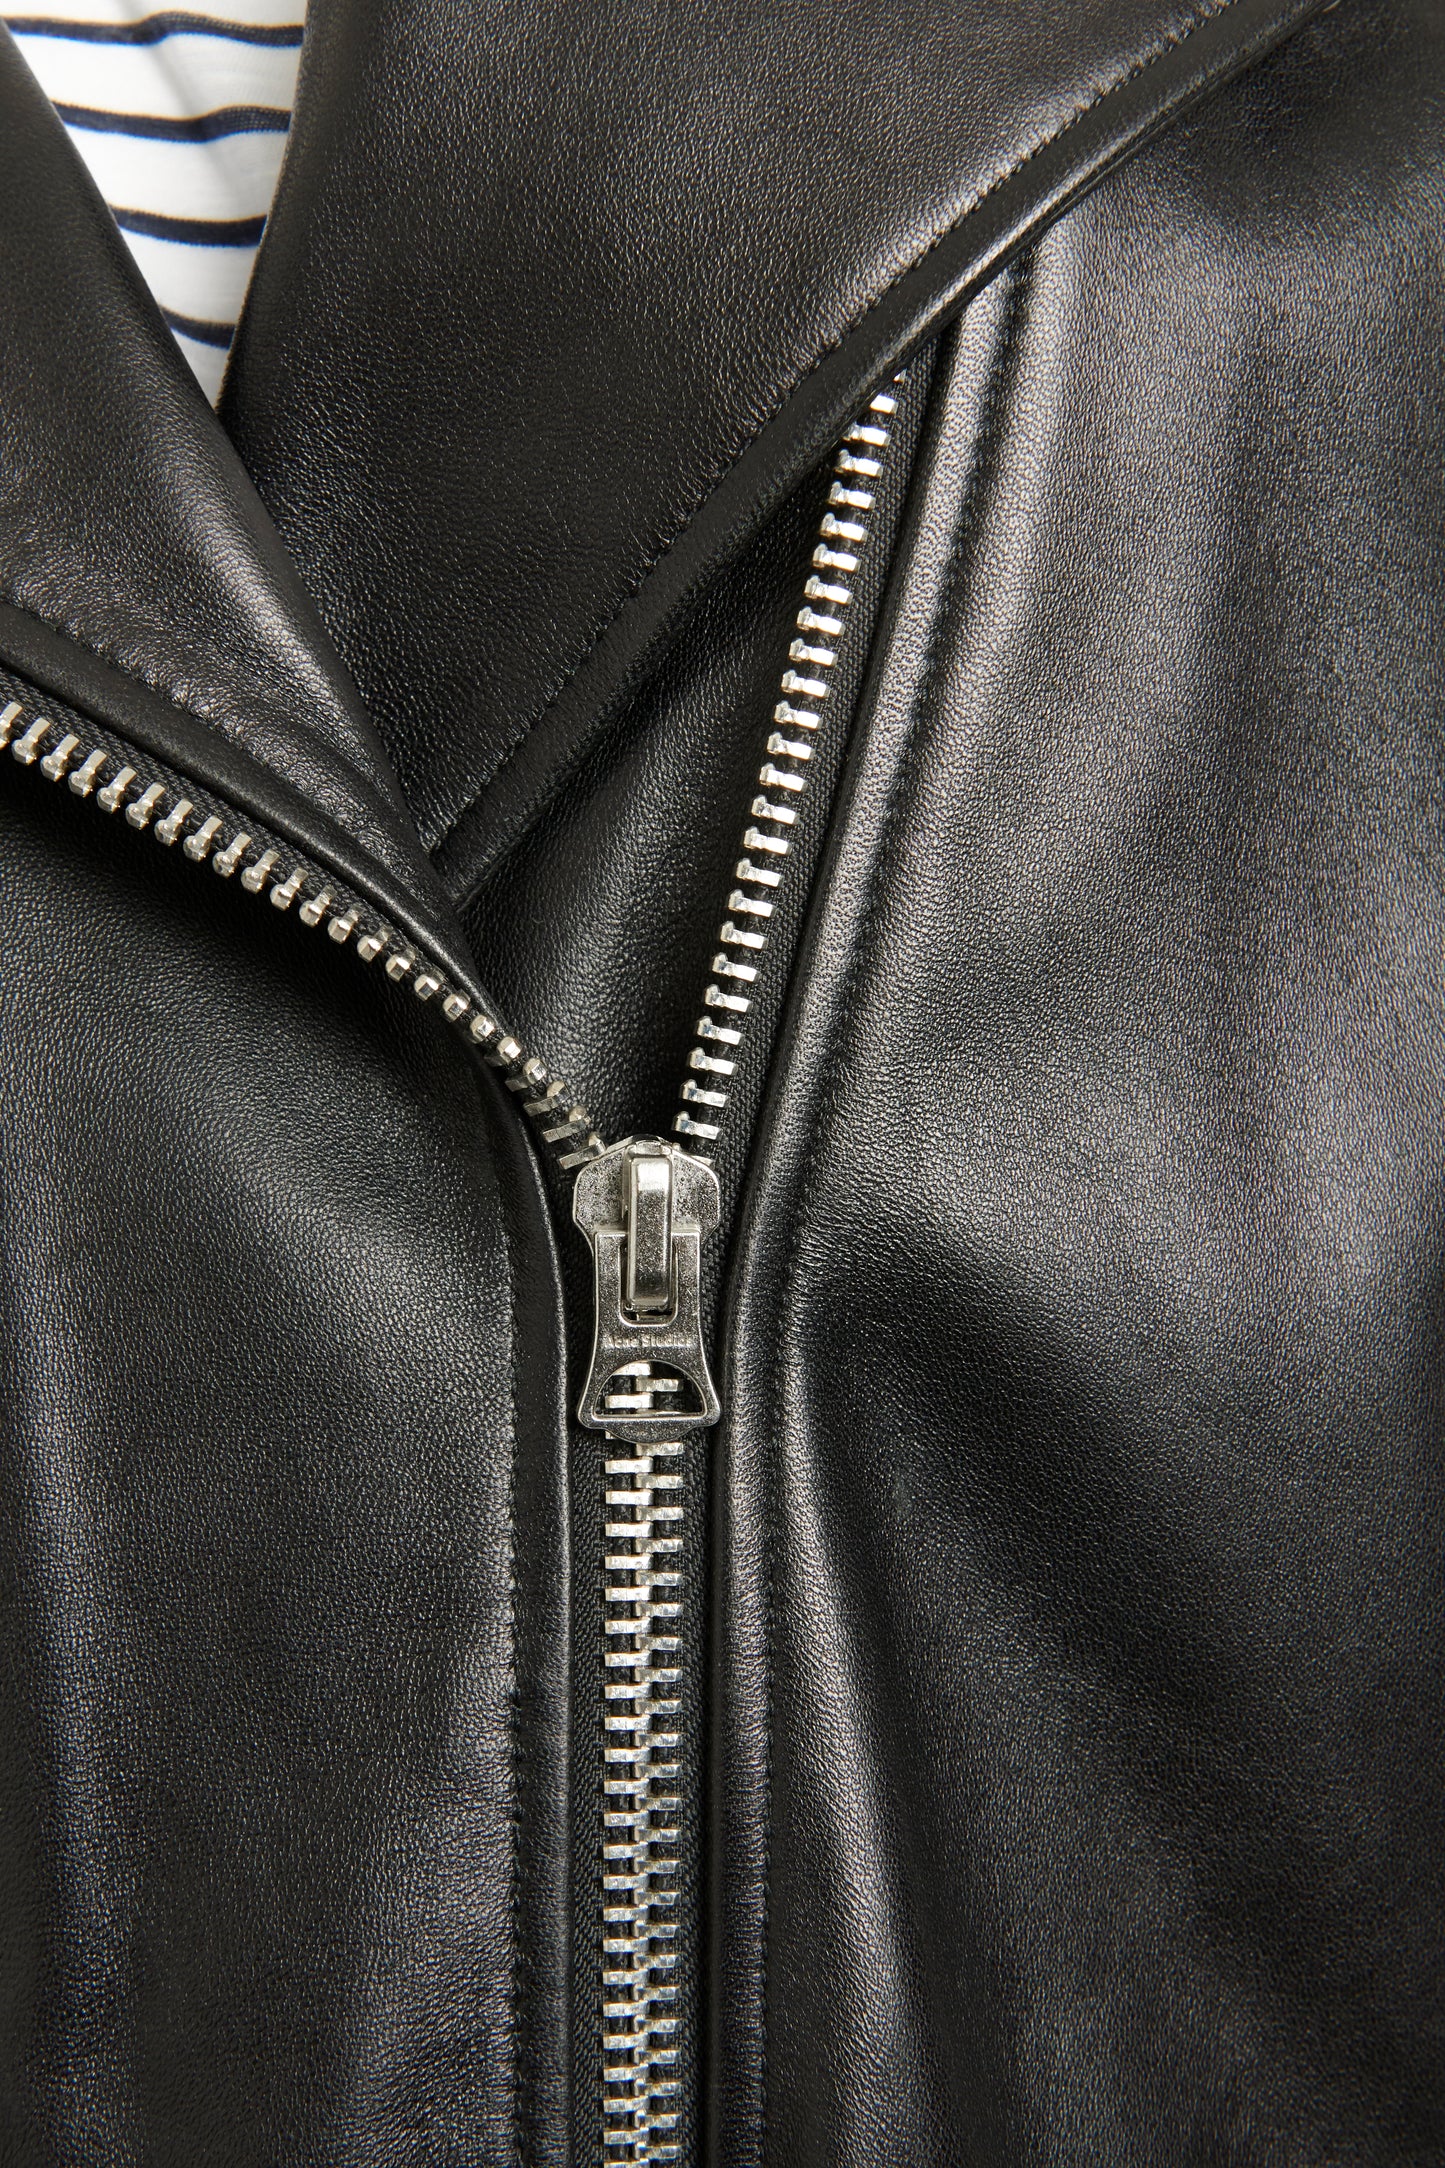 2017 Black Leather Preowned Myrtle Oversized Biker Jacket